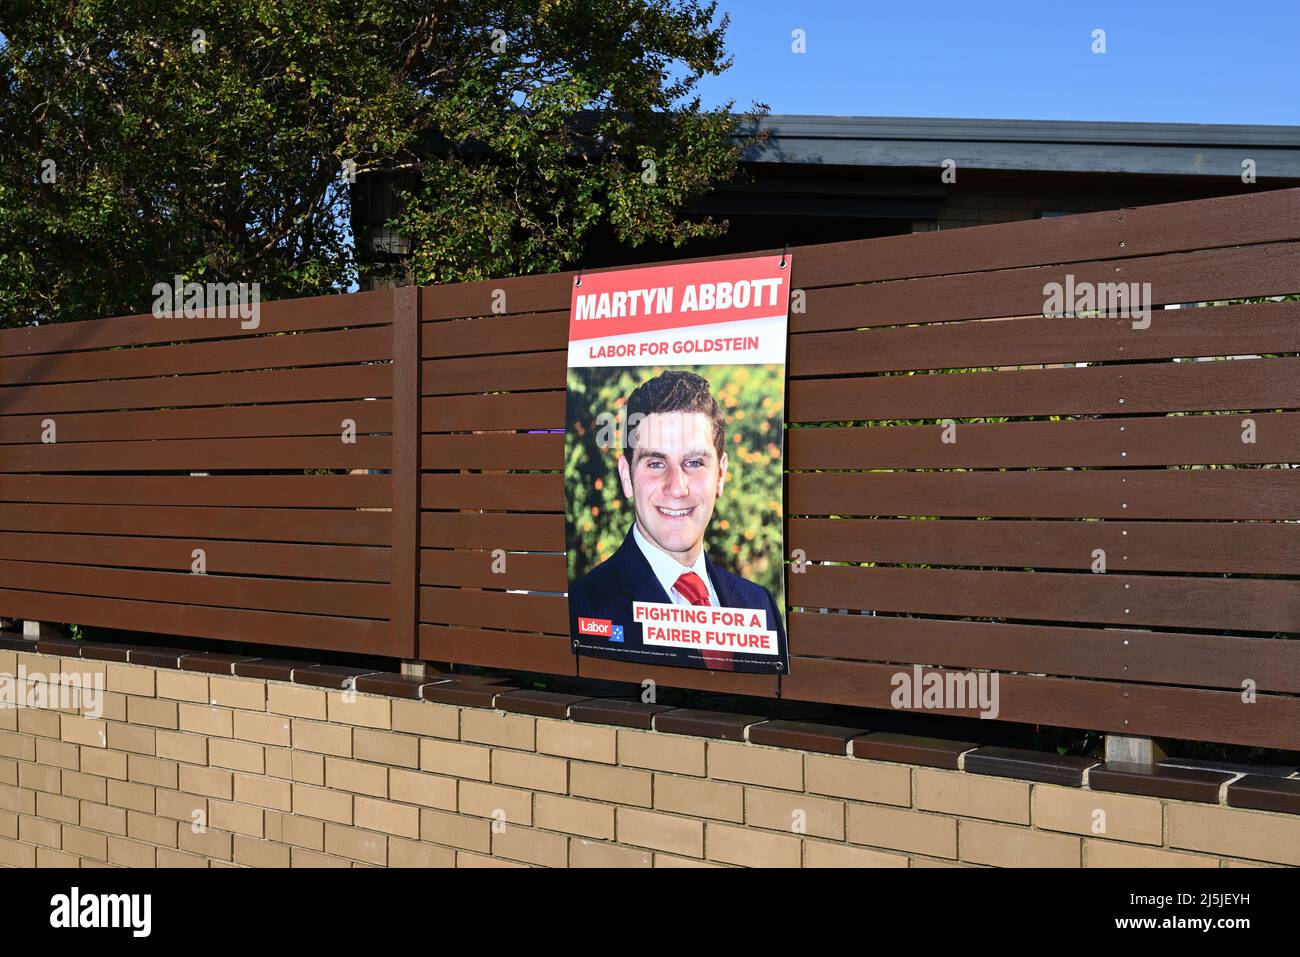 Segno di campagna per la promozione del candidato del lavoro per l'elettorato di Goldstein alle elezioni federali, Martyn Abbott, sul recinto di una casa suburbana Foto Stock